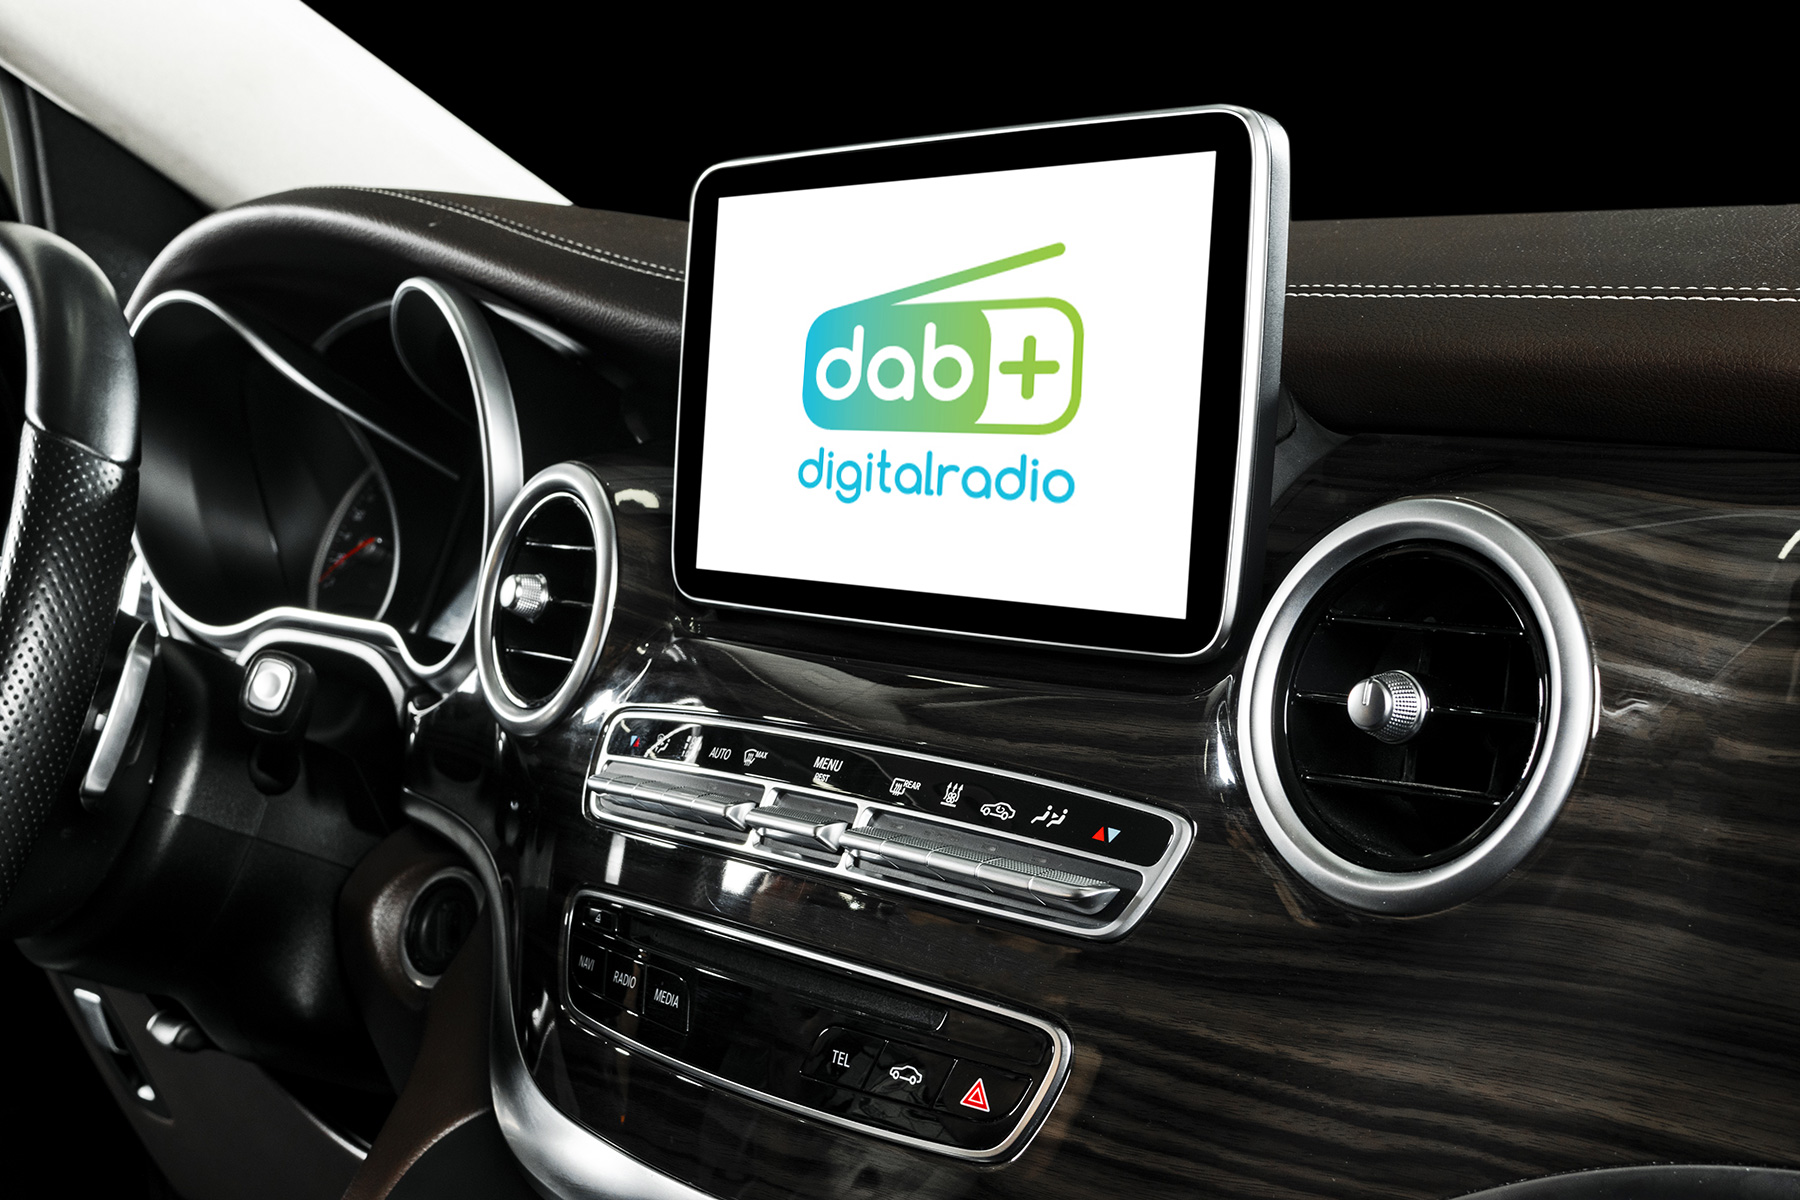 Tutte le auto nuove in vendita in EU devono avere la radio DAB+ di serie -  Digital Radio